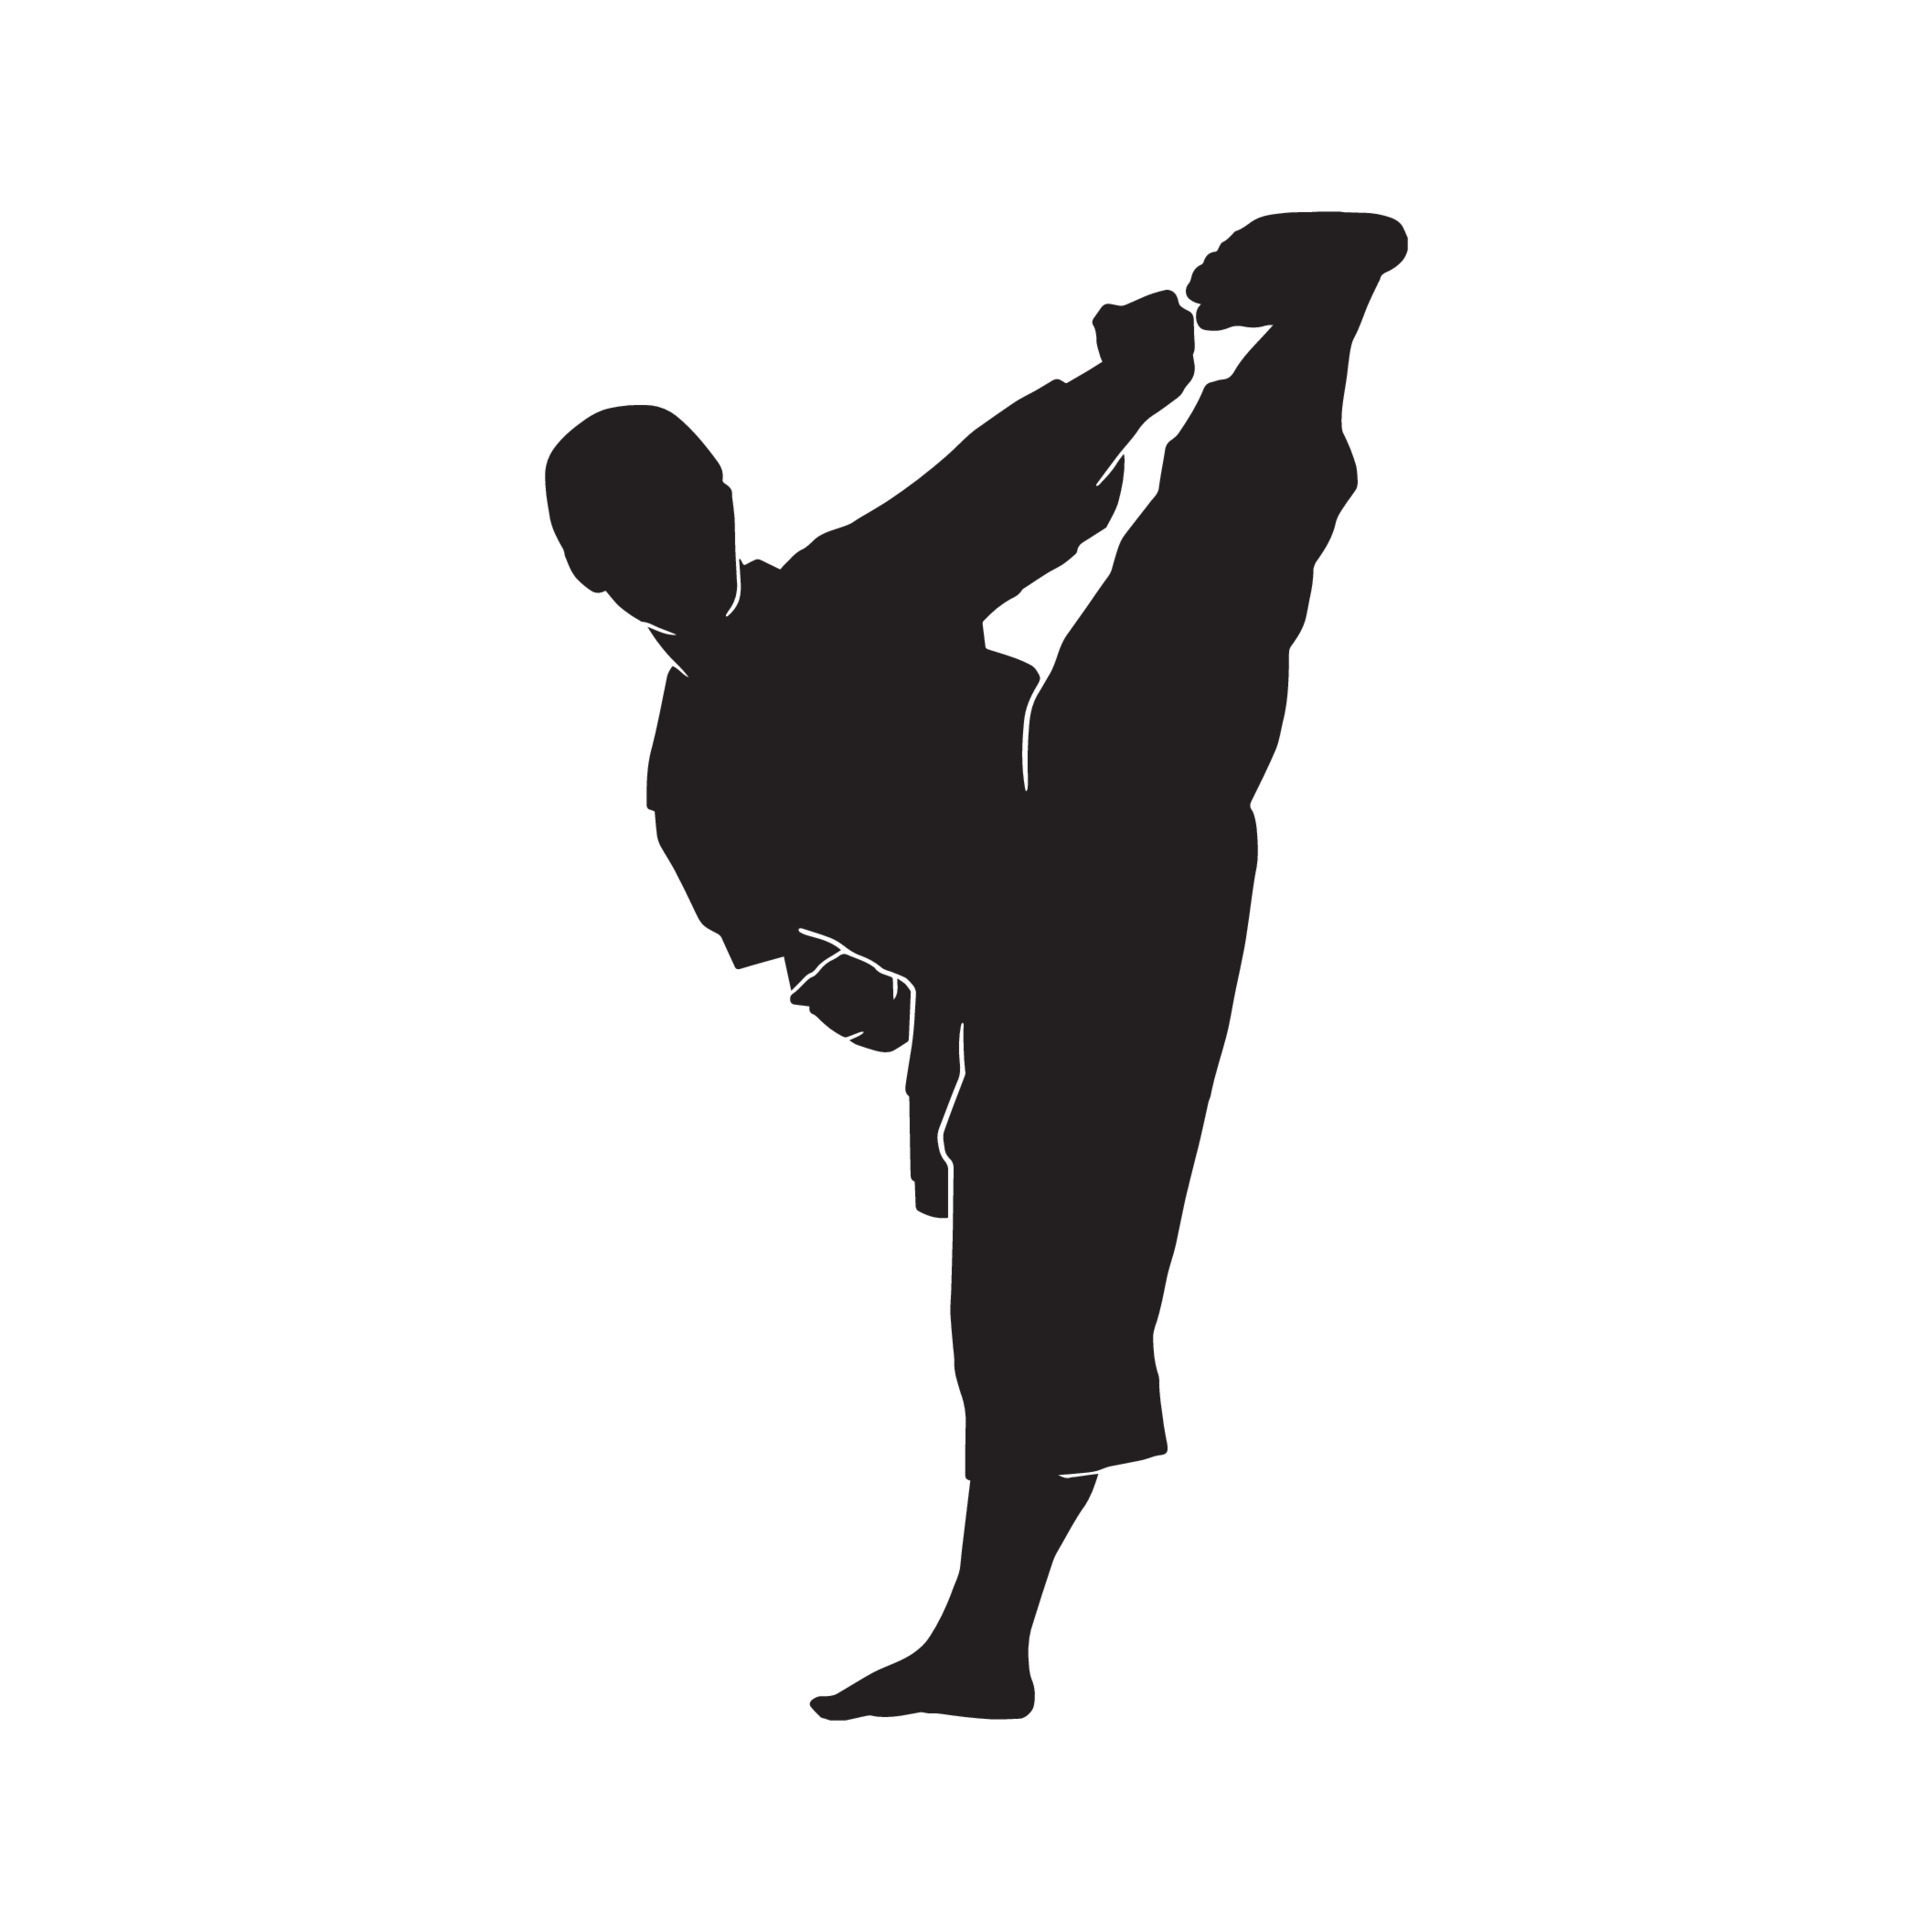 Hãy ngắm nhìn những đường nét mạnh mẽ của vận động viên Karate khi tập luyện để trở thành một đối thủ đáng gờm. Với hình ảnh đen trắng của Karate athlete silhouette, bạn sẽ cảm nhận được sự kiên cường và quyết tâm của những vận động viên trẻ tuổi này.